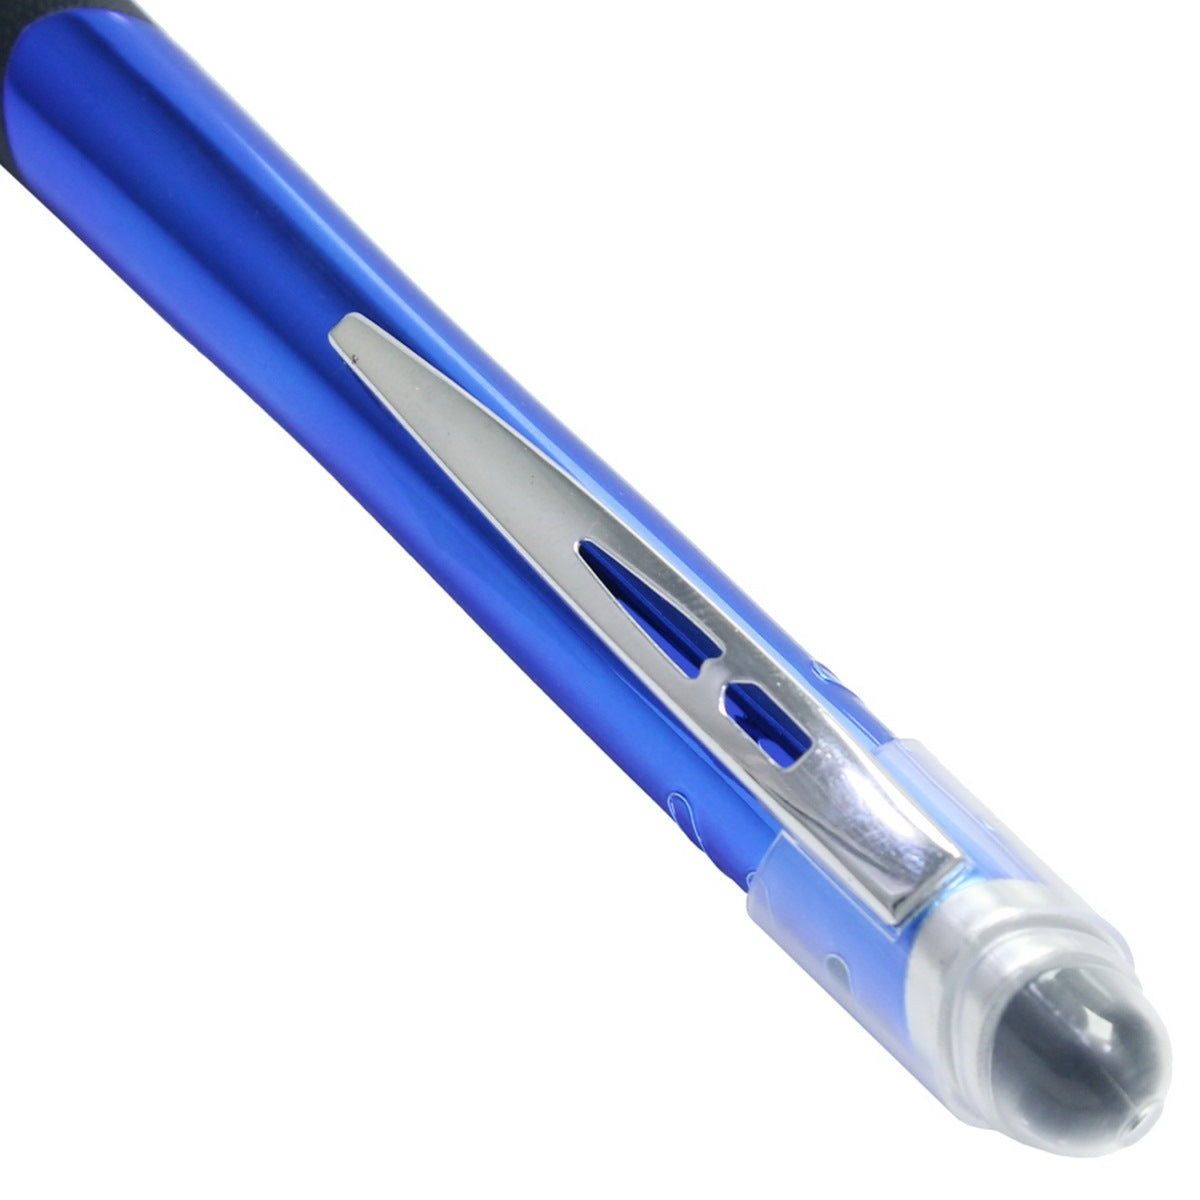 jags-mumbai Ball Pens Ball Pen Brand Hilighter Pen Blue BPBHBL